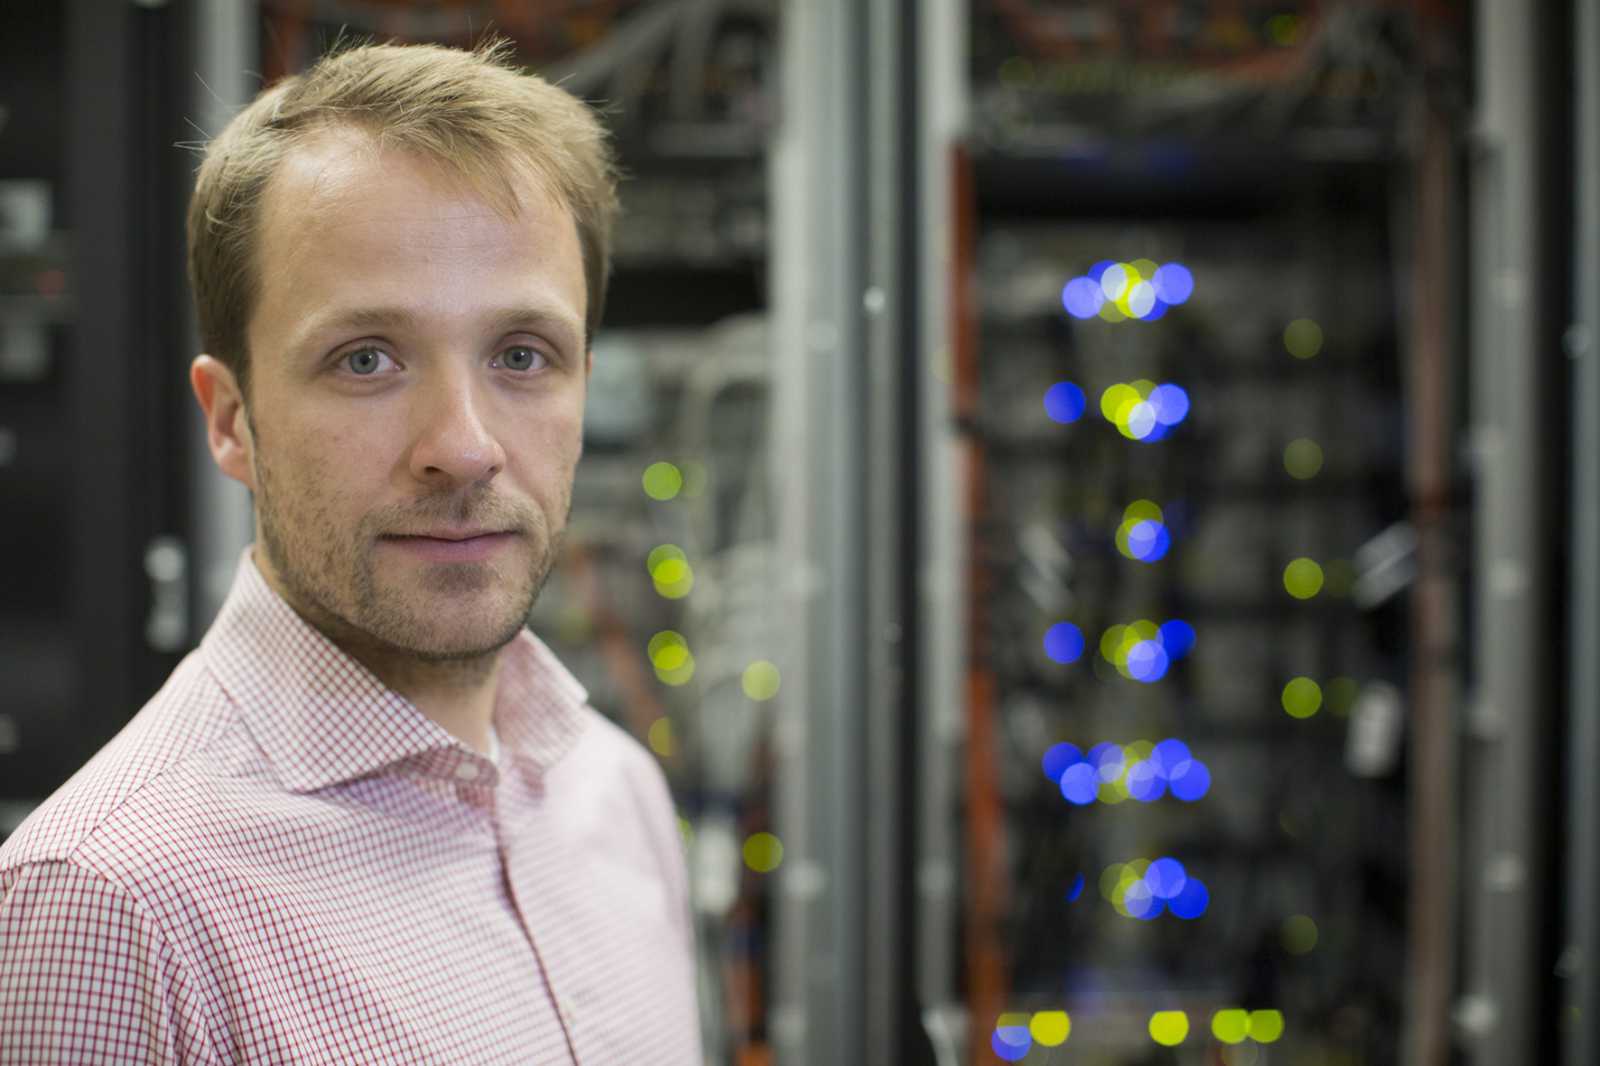 IT-Sicherheitsexperte Prof. Dr. Sebastian Schinzel gibt Tipps, wie man sich vor Hackerangriffen schützen kann. (Foto: FH Münster/Wilfried Gerharz)